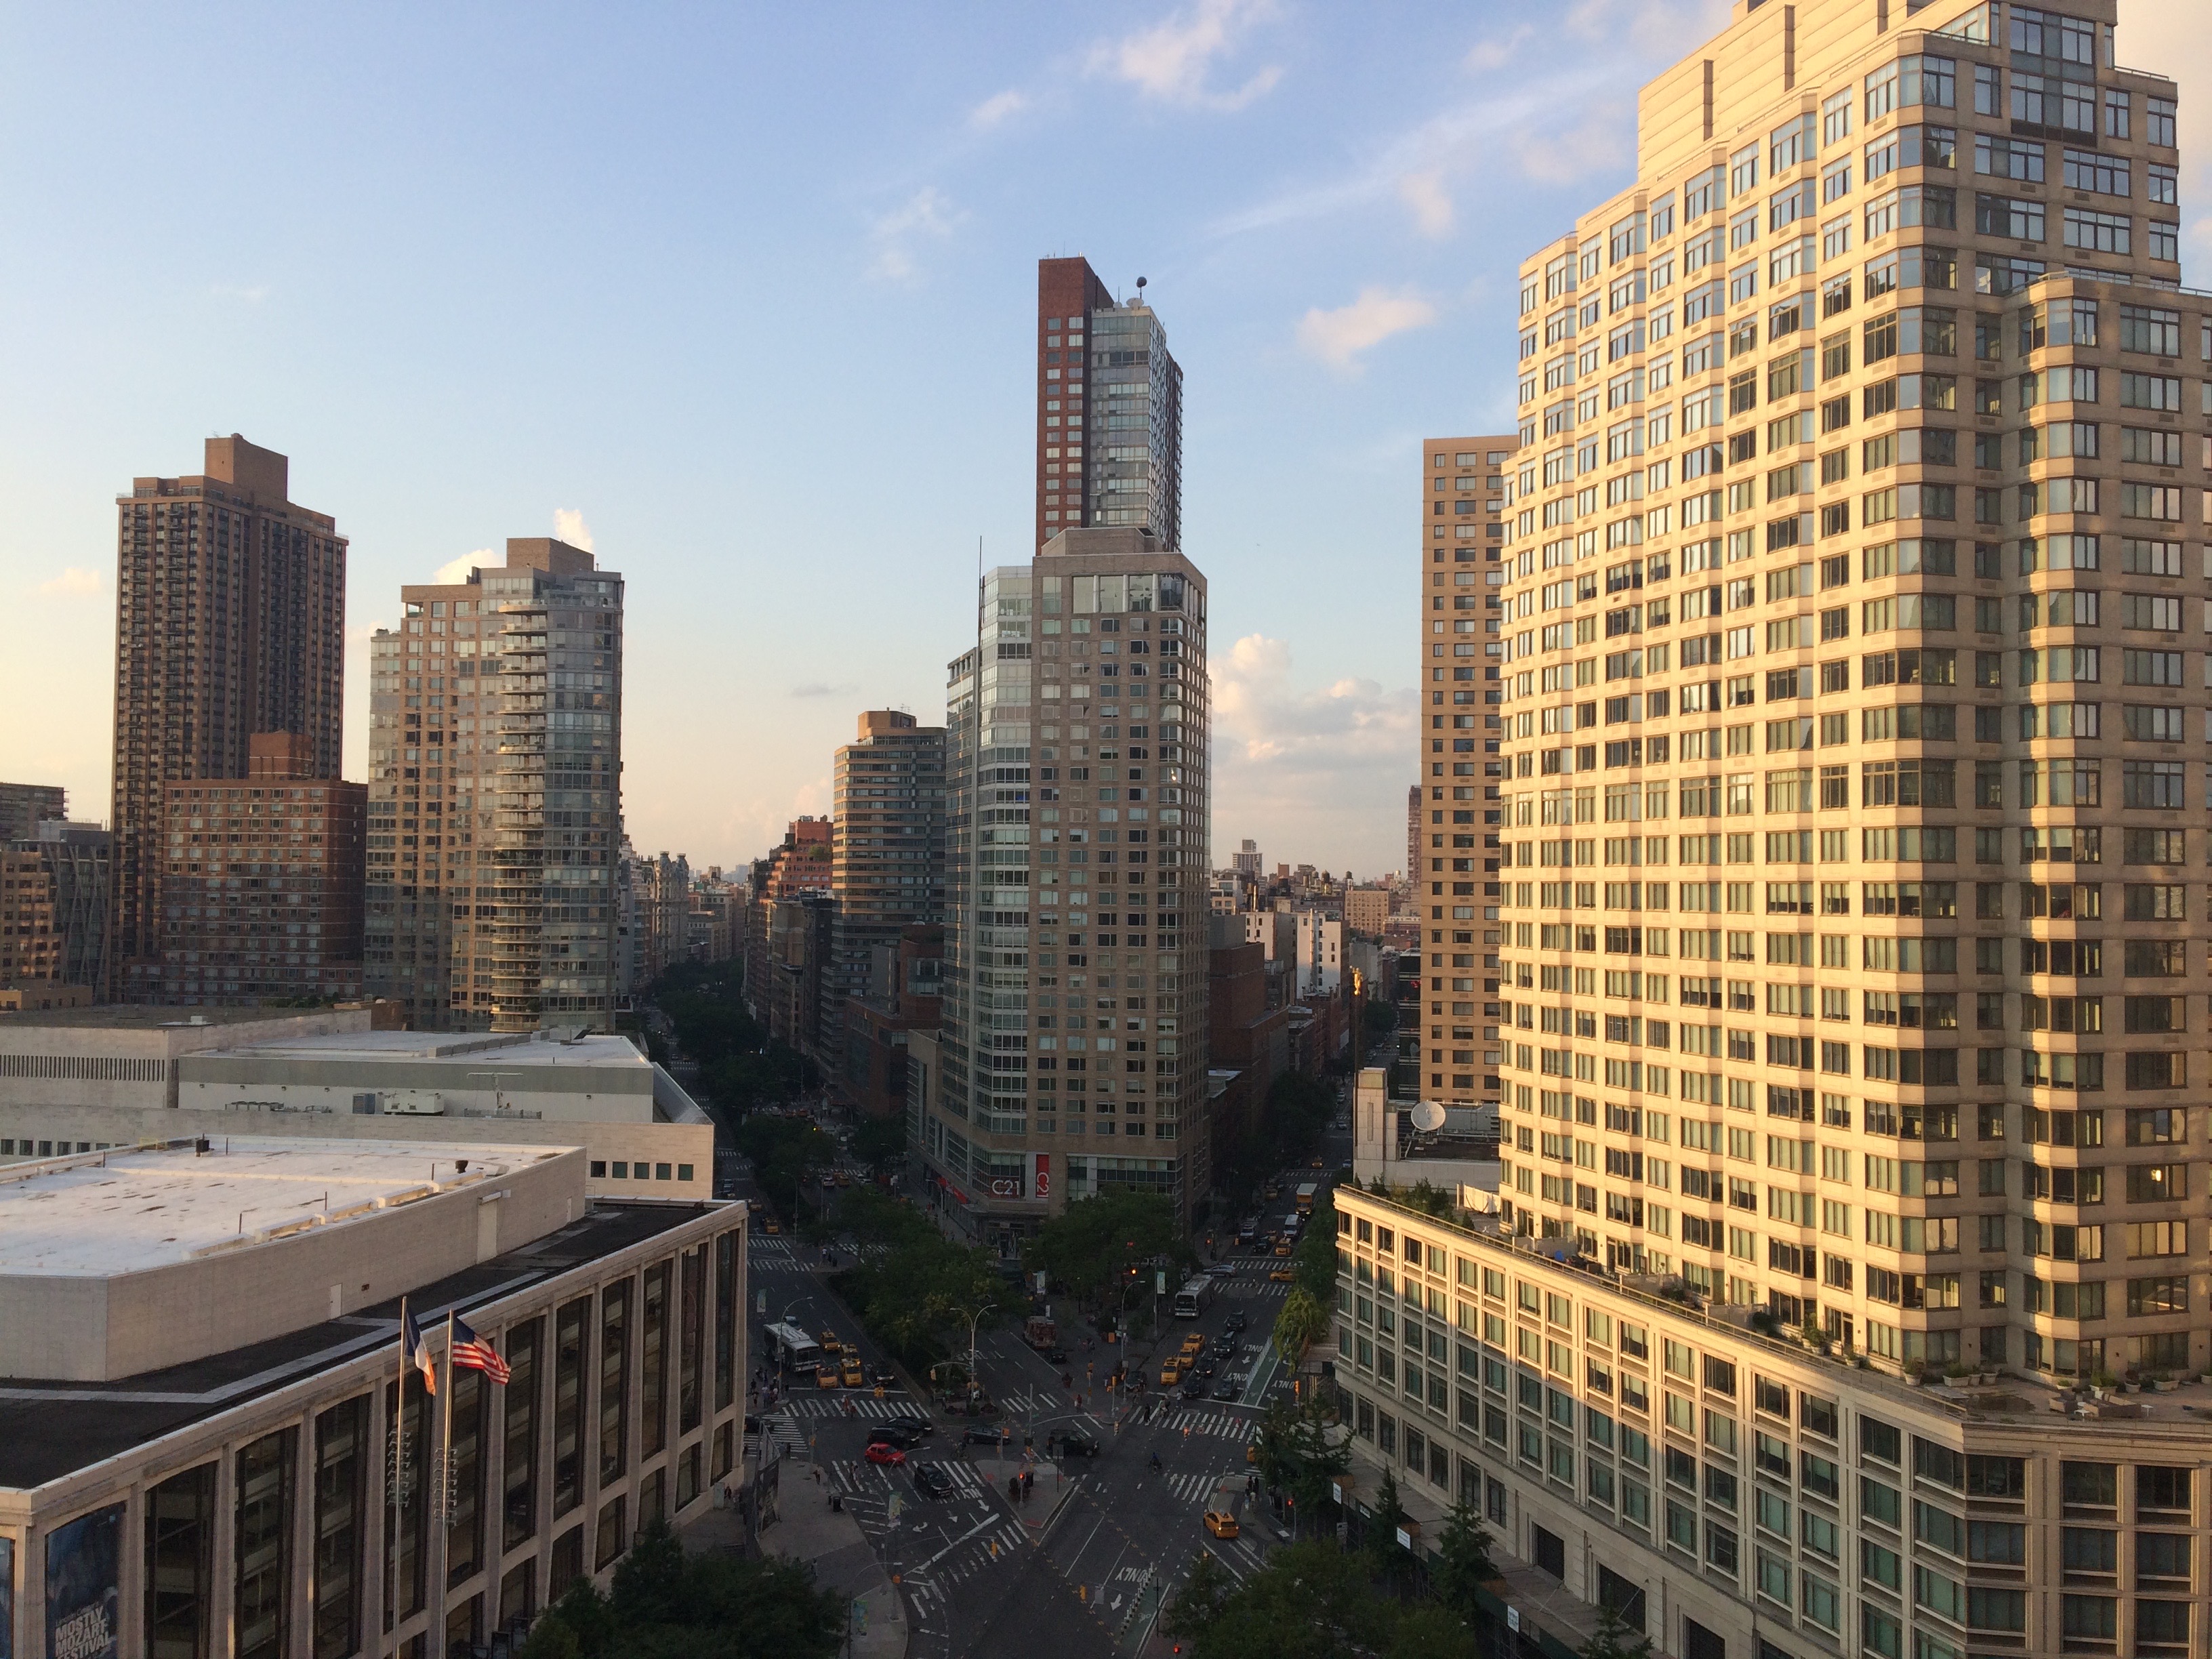 View of New York, taken during Advertising Week.